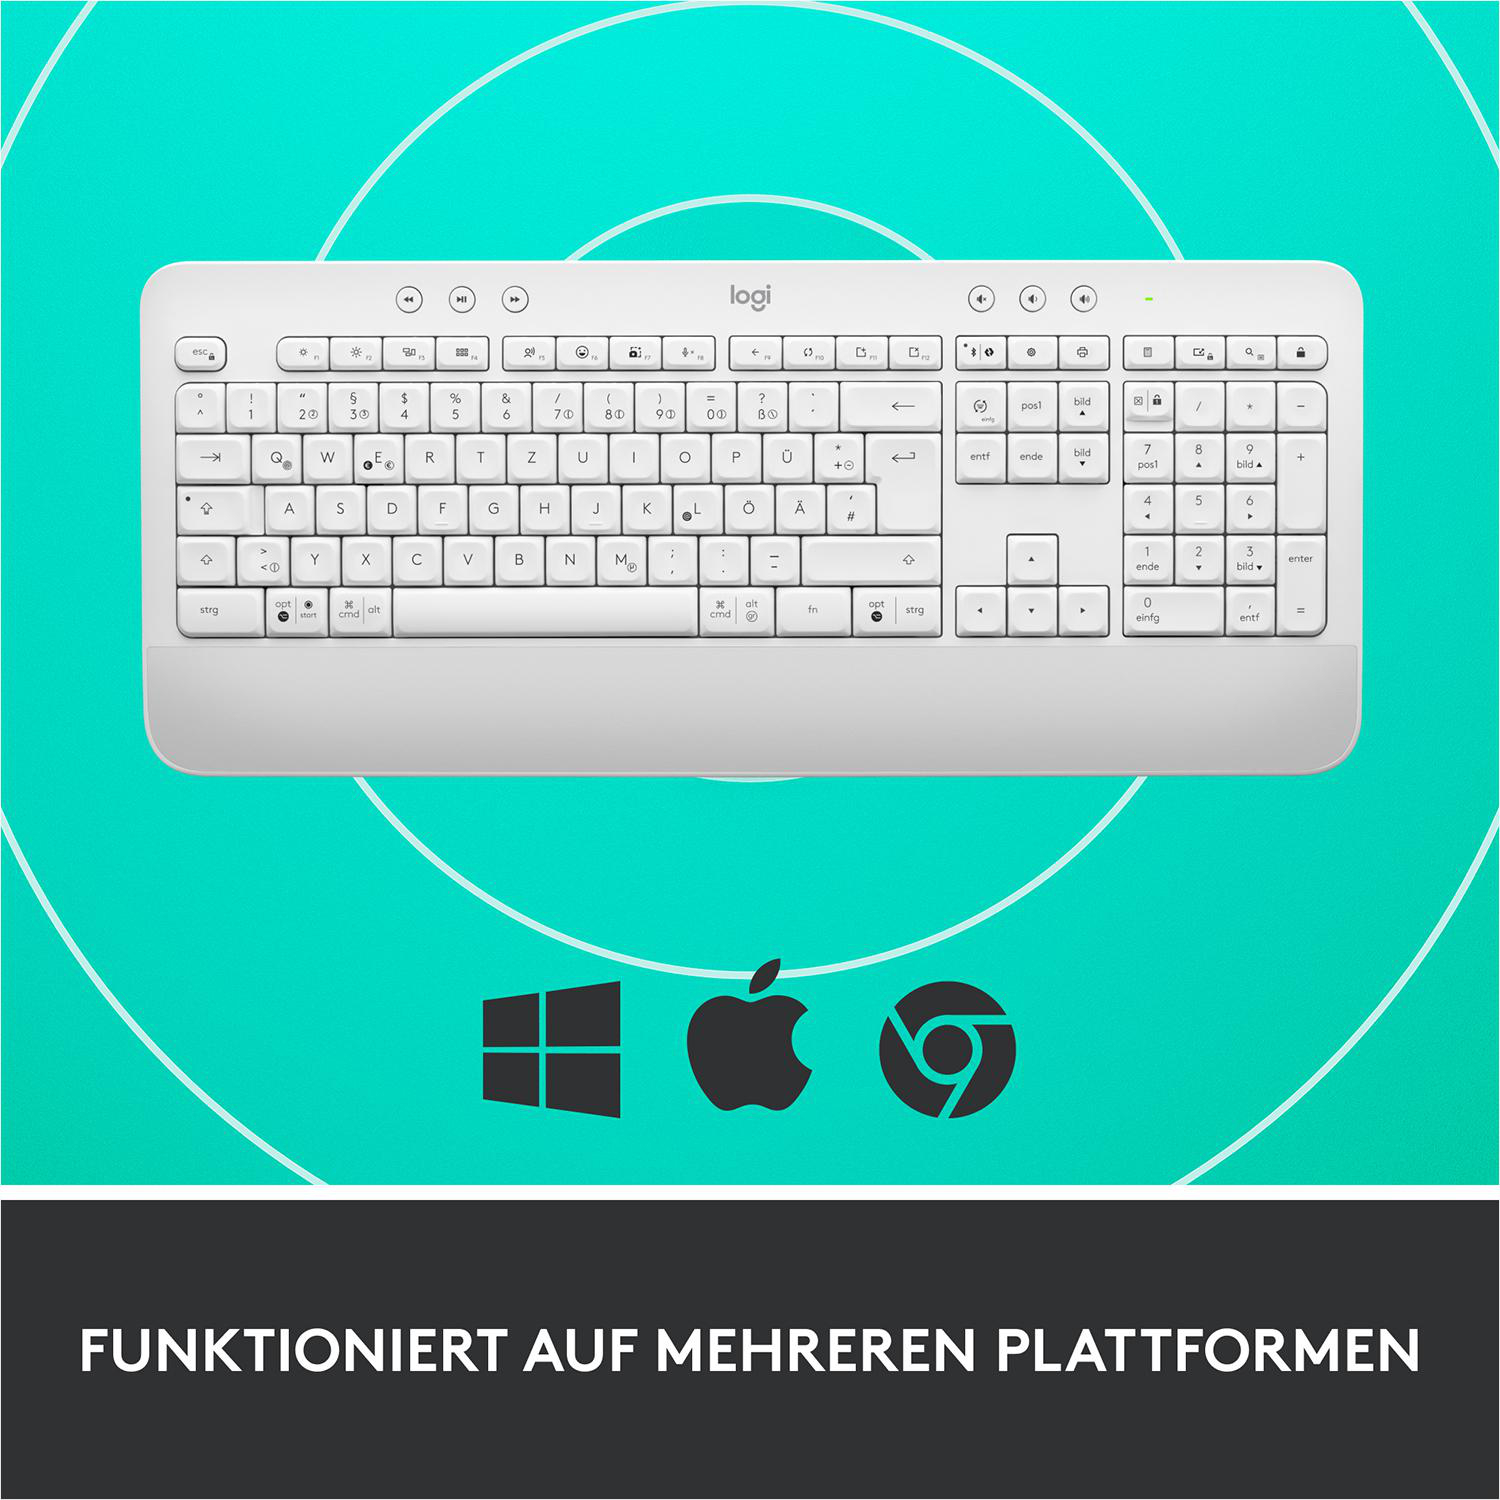 OFF-WHITE kabellos, LOGITECH Tastatur, Signature Comfort, K650